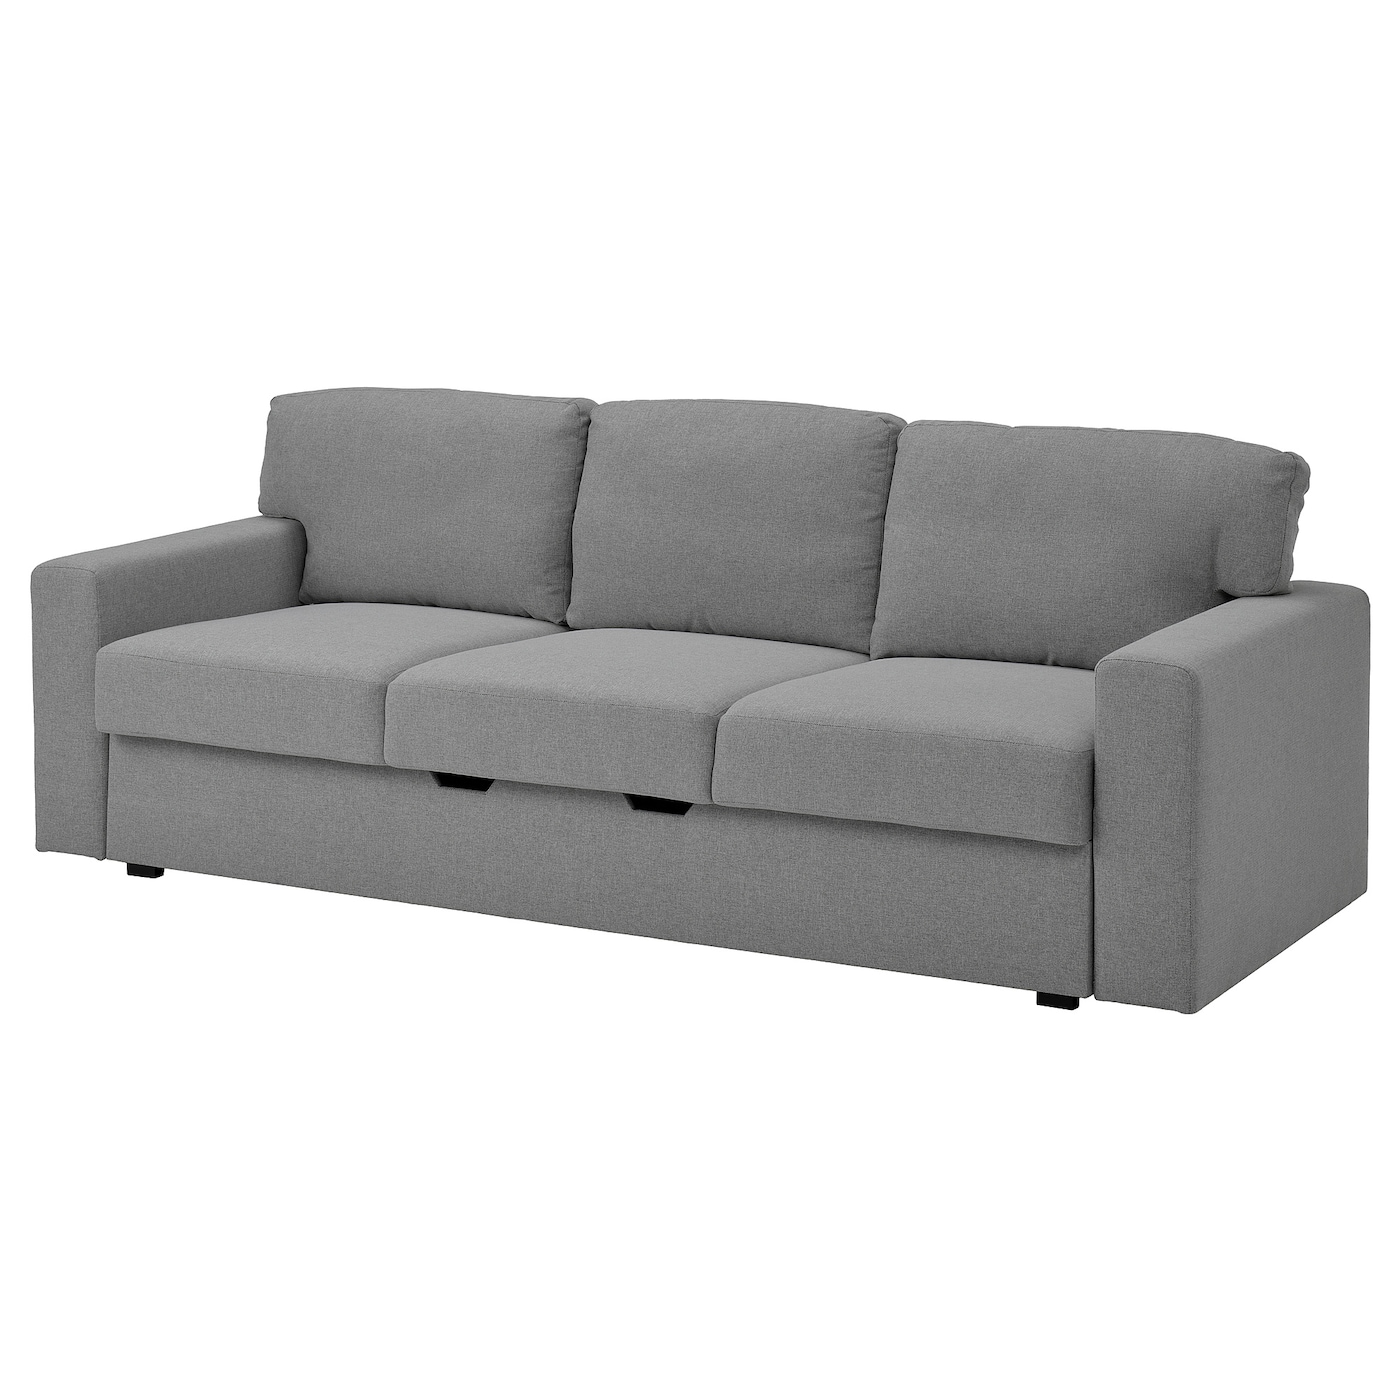 БОРСЛОВ 3-местный диван-кровать, Тибблби бежевый/серый BÅRSLÖV IKEA диван кровать нижегородмебель и к ирис тд 962